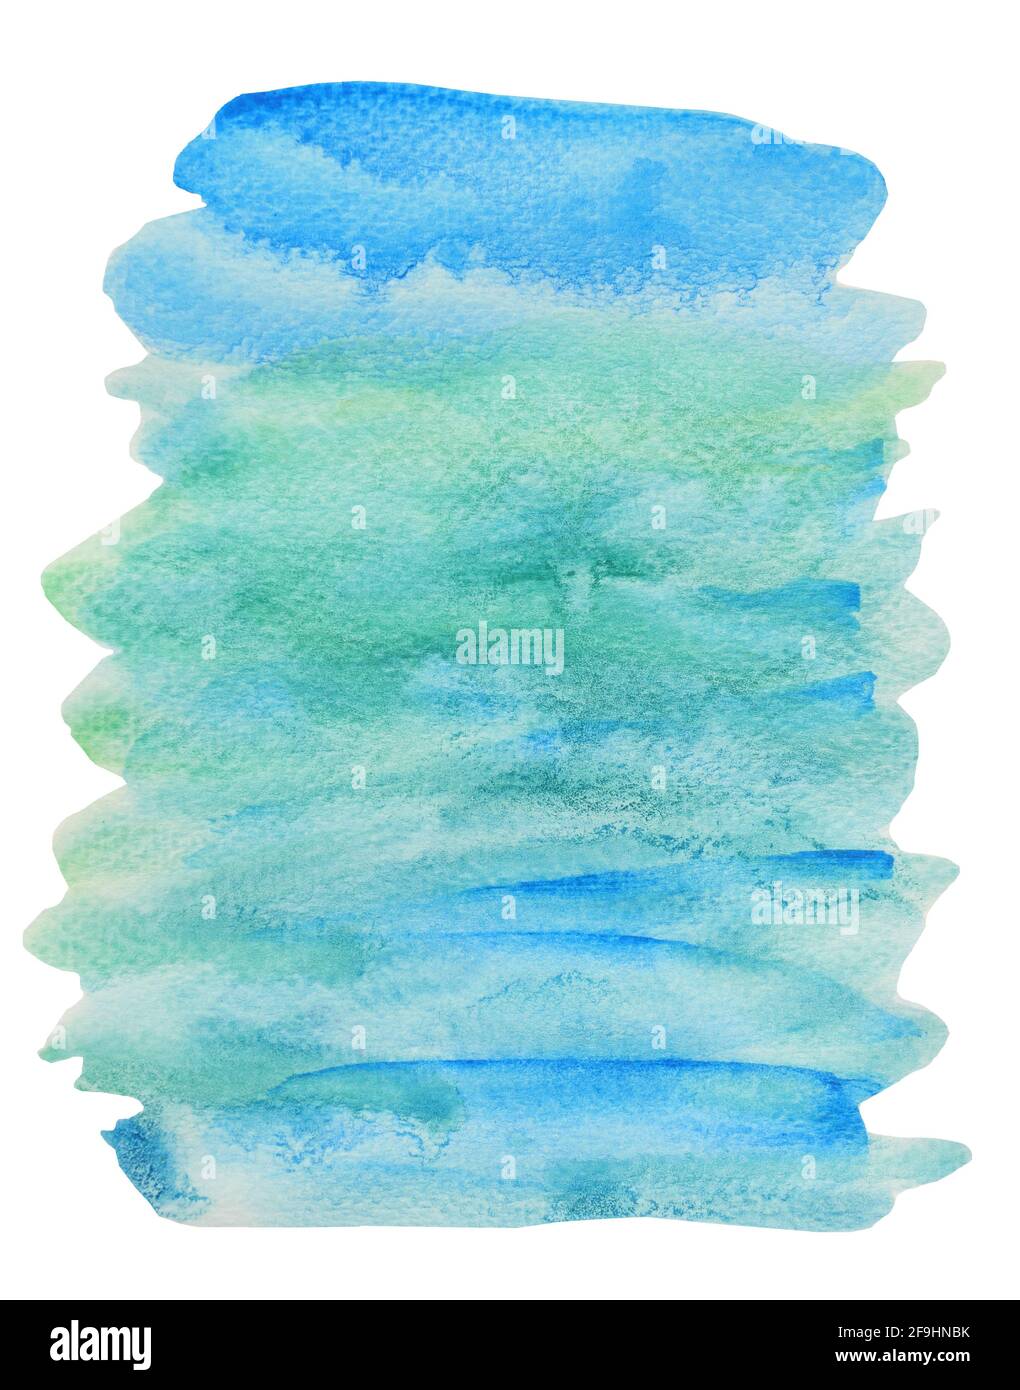 Abstrakter Hintergrund und Texturmuster blau und grün Farbfluss auf weißem Hintergrund, Illustration Aquarell Handzeichnung und gemalt auf Papier Stockfoto